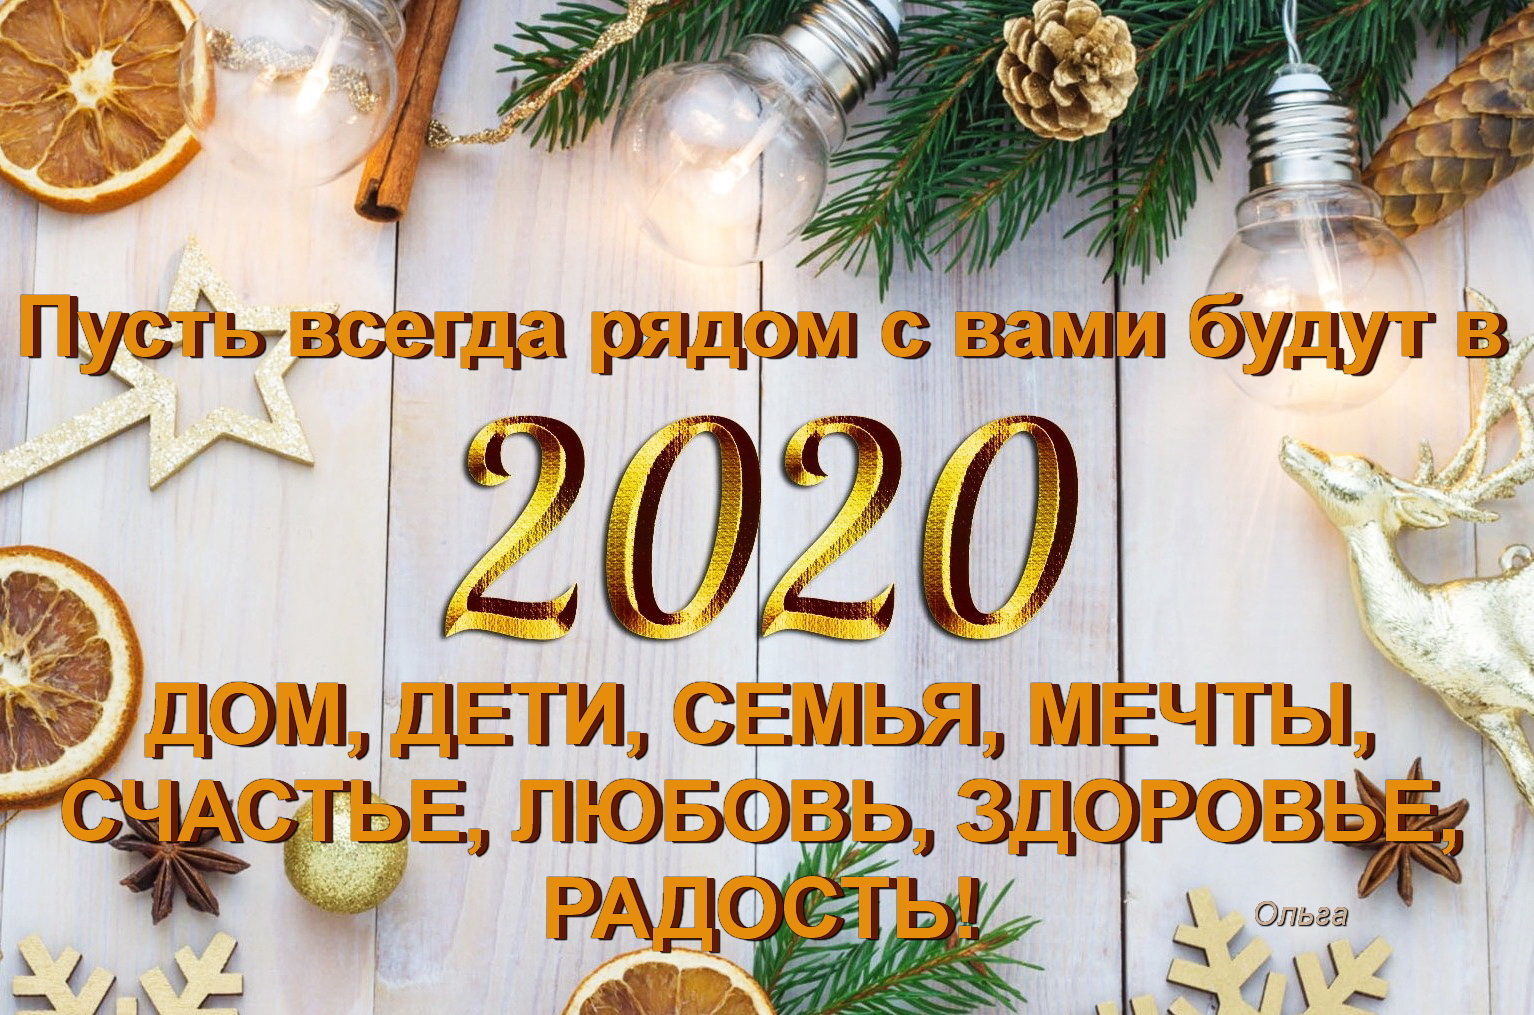 С пришедшим Новым годом! пожелания на 2020 год - С первым днем нового года! поздравления 1 января - Открытки с Новым 2020 годом